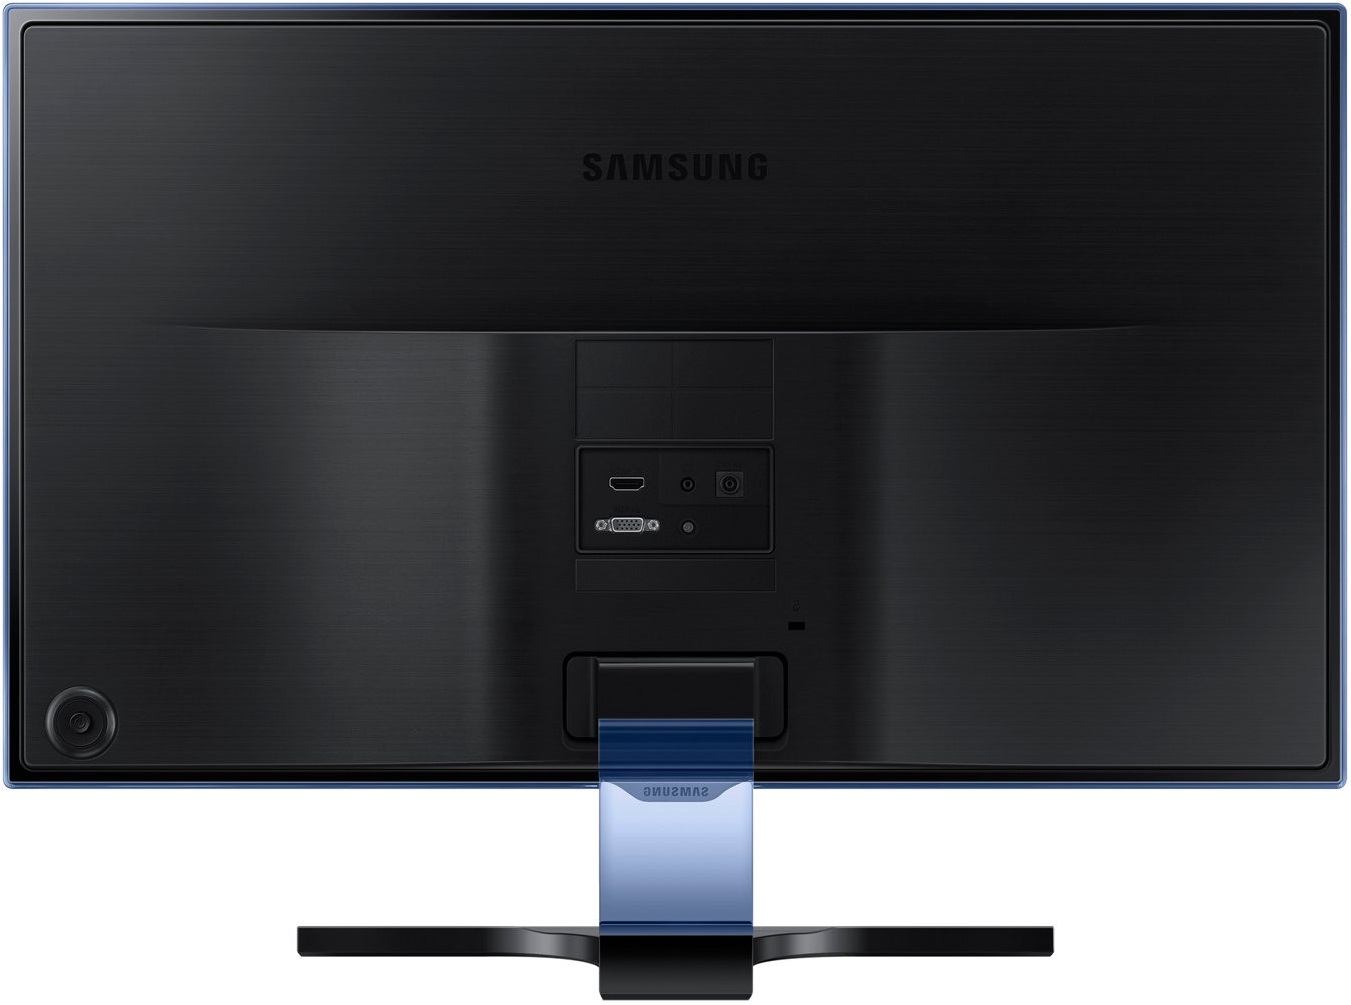 Samsung 23.6" PLS LED S24E390HL